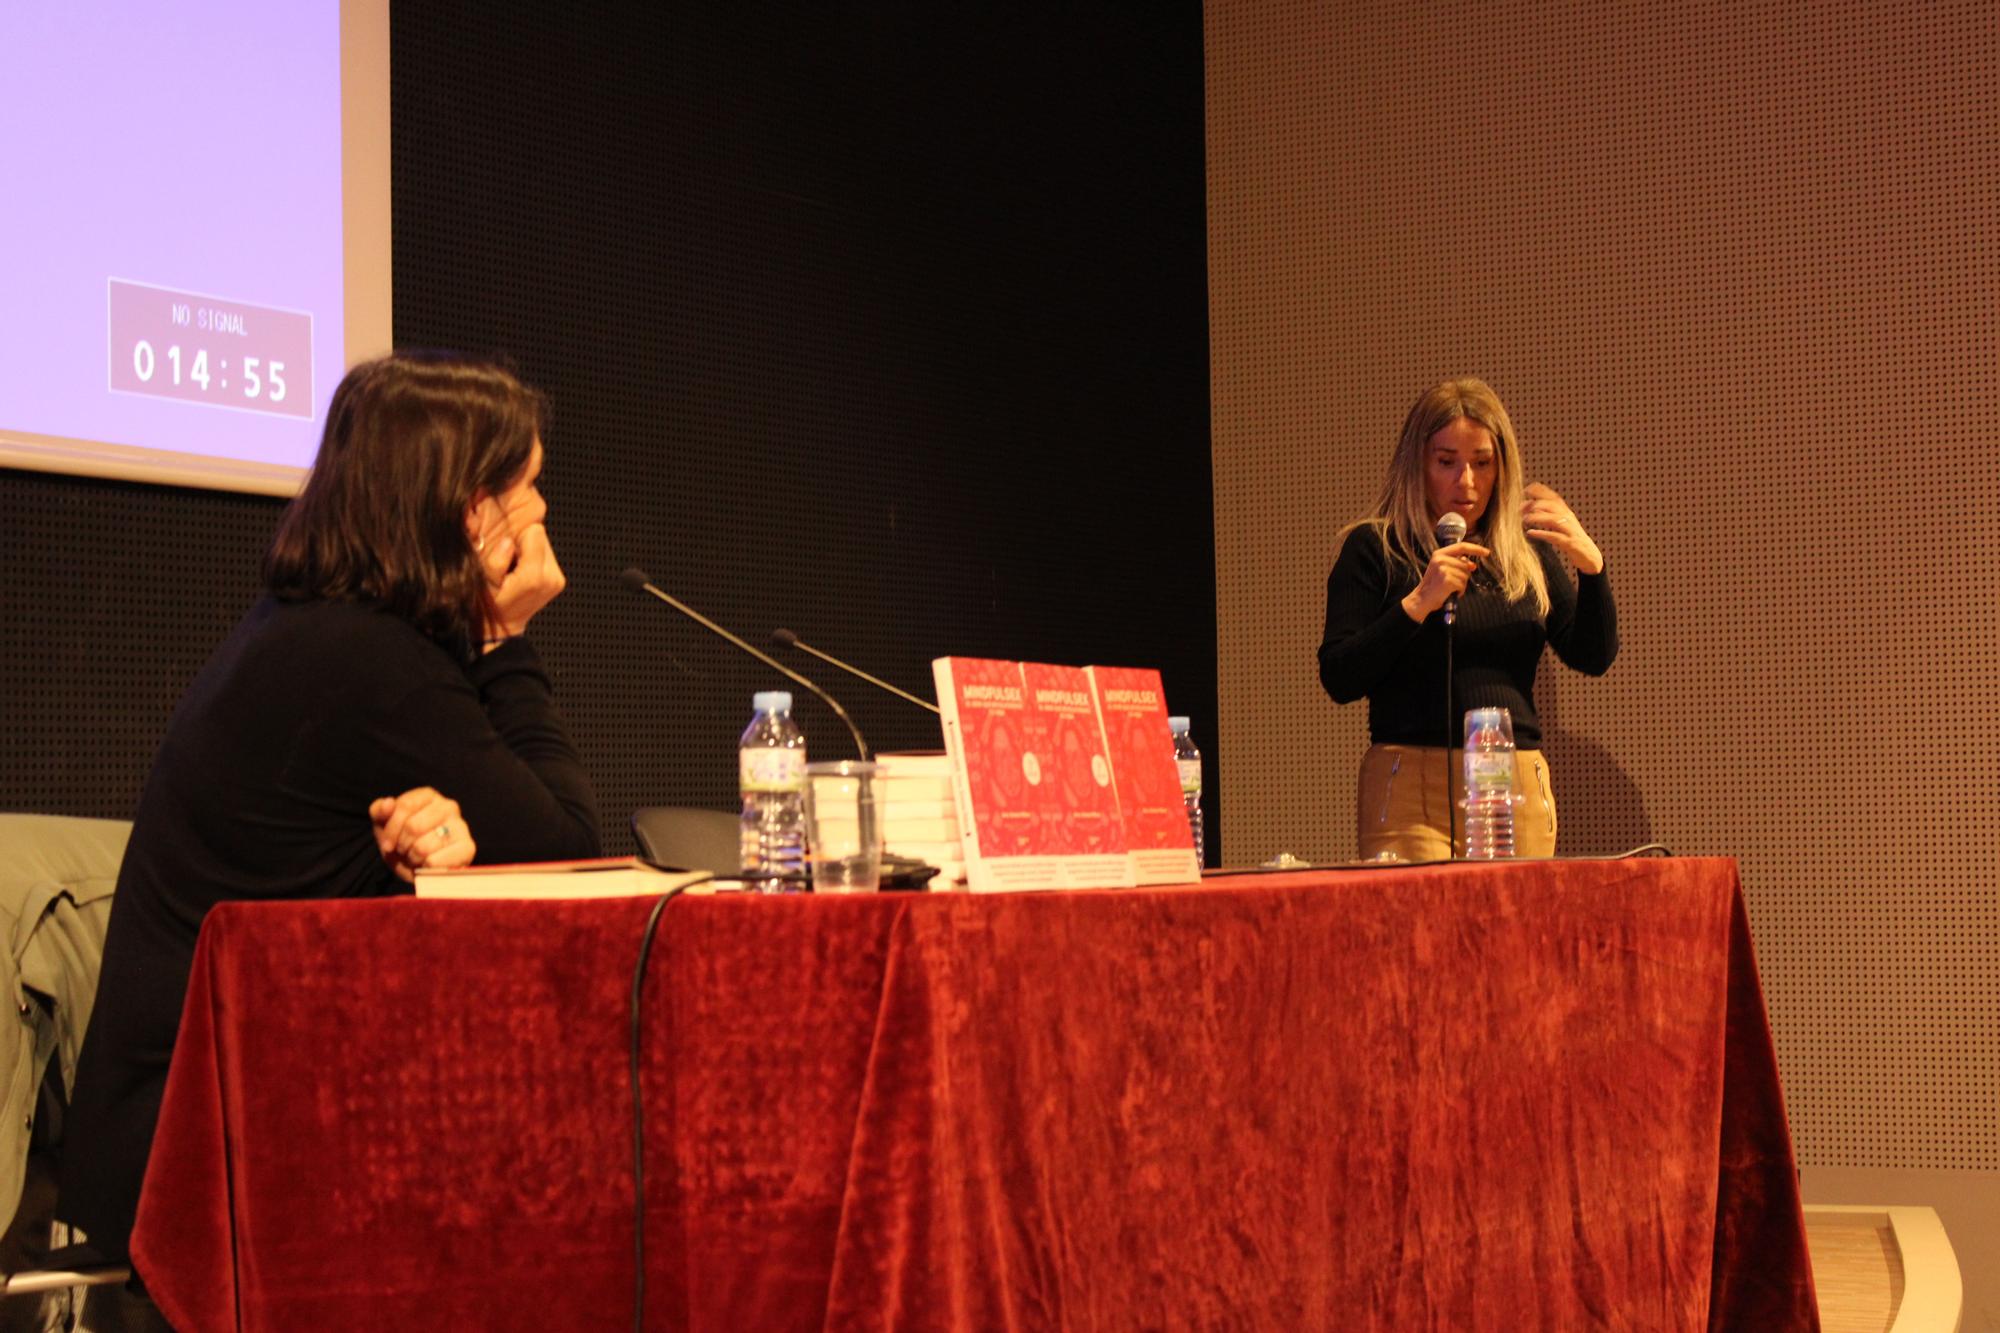 La sexòloga Emma Ribas presenta el seu llibre 'Mindfulsex' a la Sala Erato